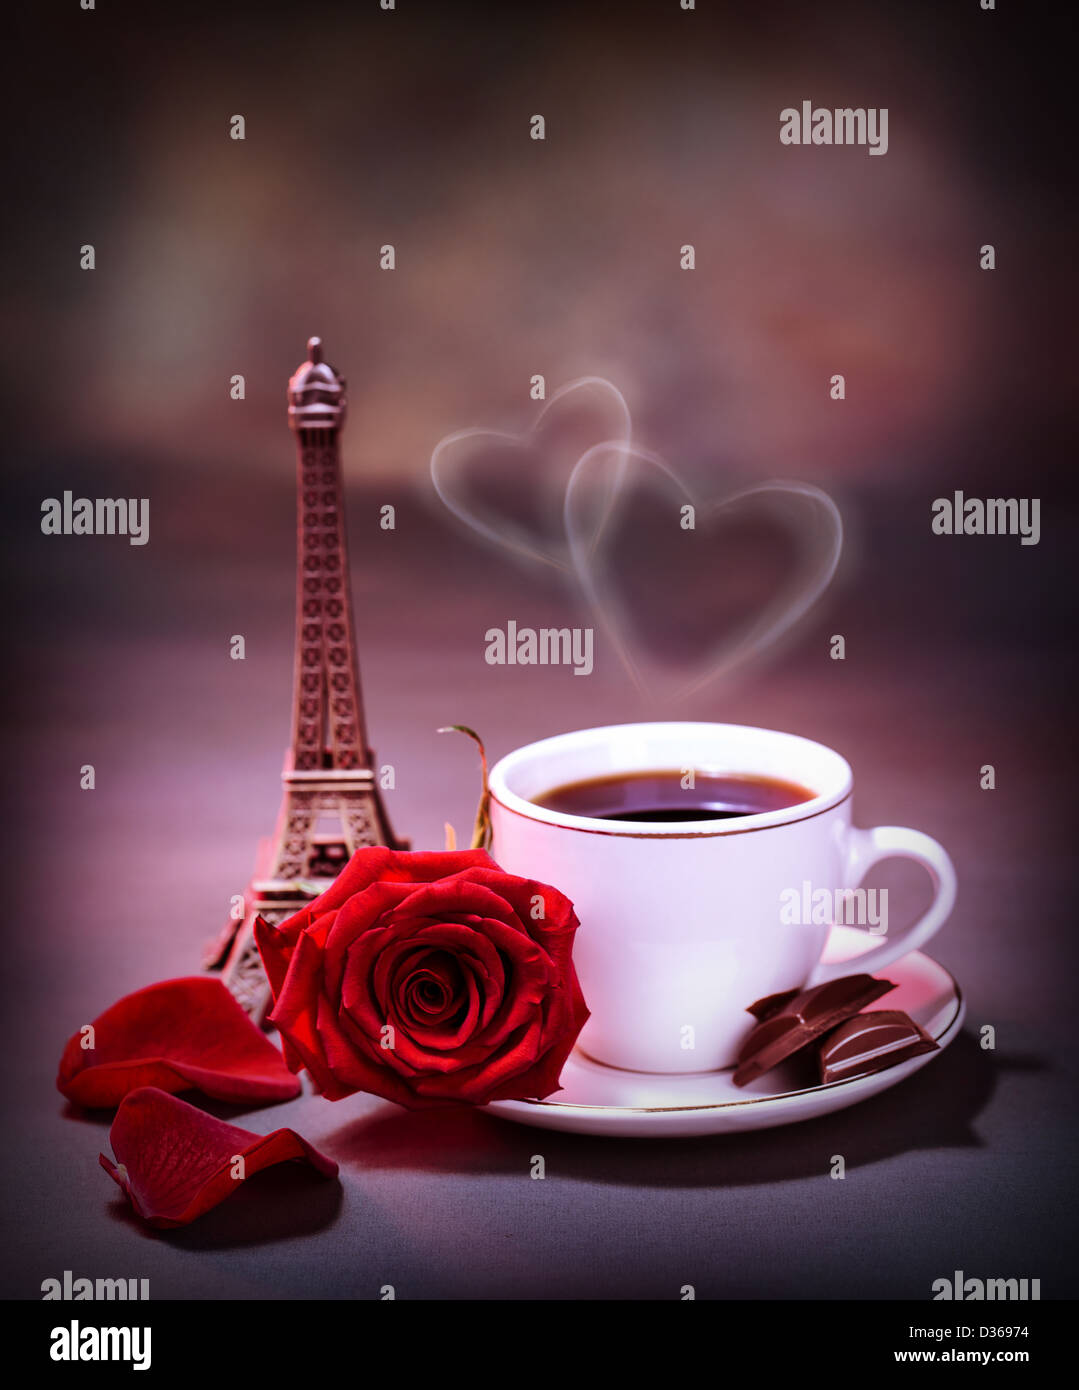 Immagine della tazza bianca con caffè e cioccolato decorato con una rosa rossa sul tavolo a Parigi, una romantica luna di miele Foto Stock